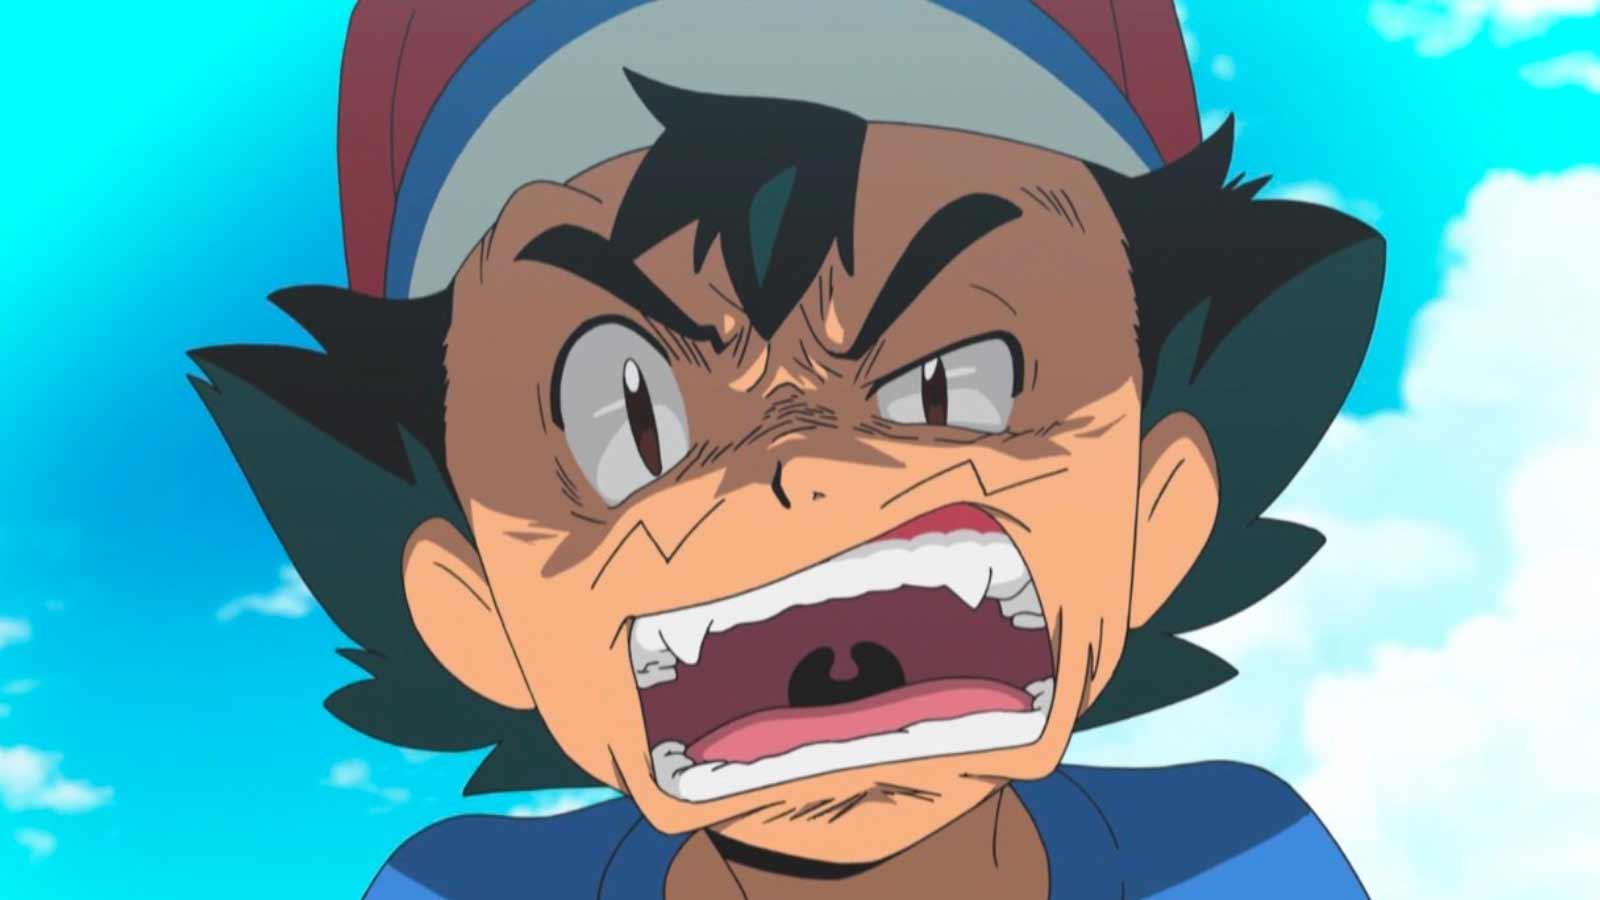 Ash Ketchum angry at Pokemon